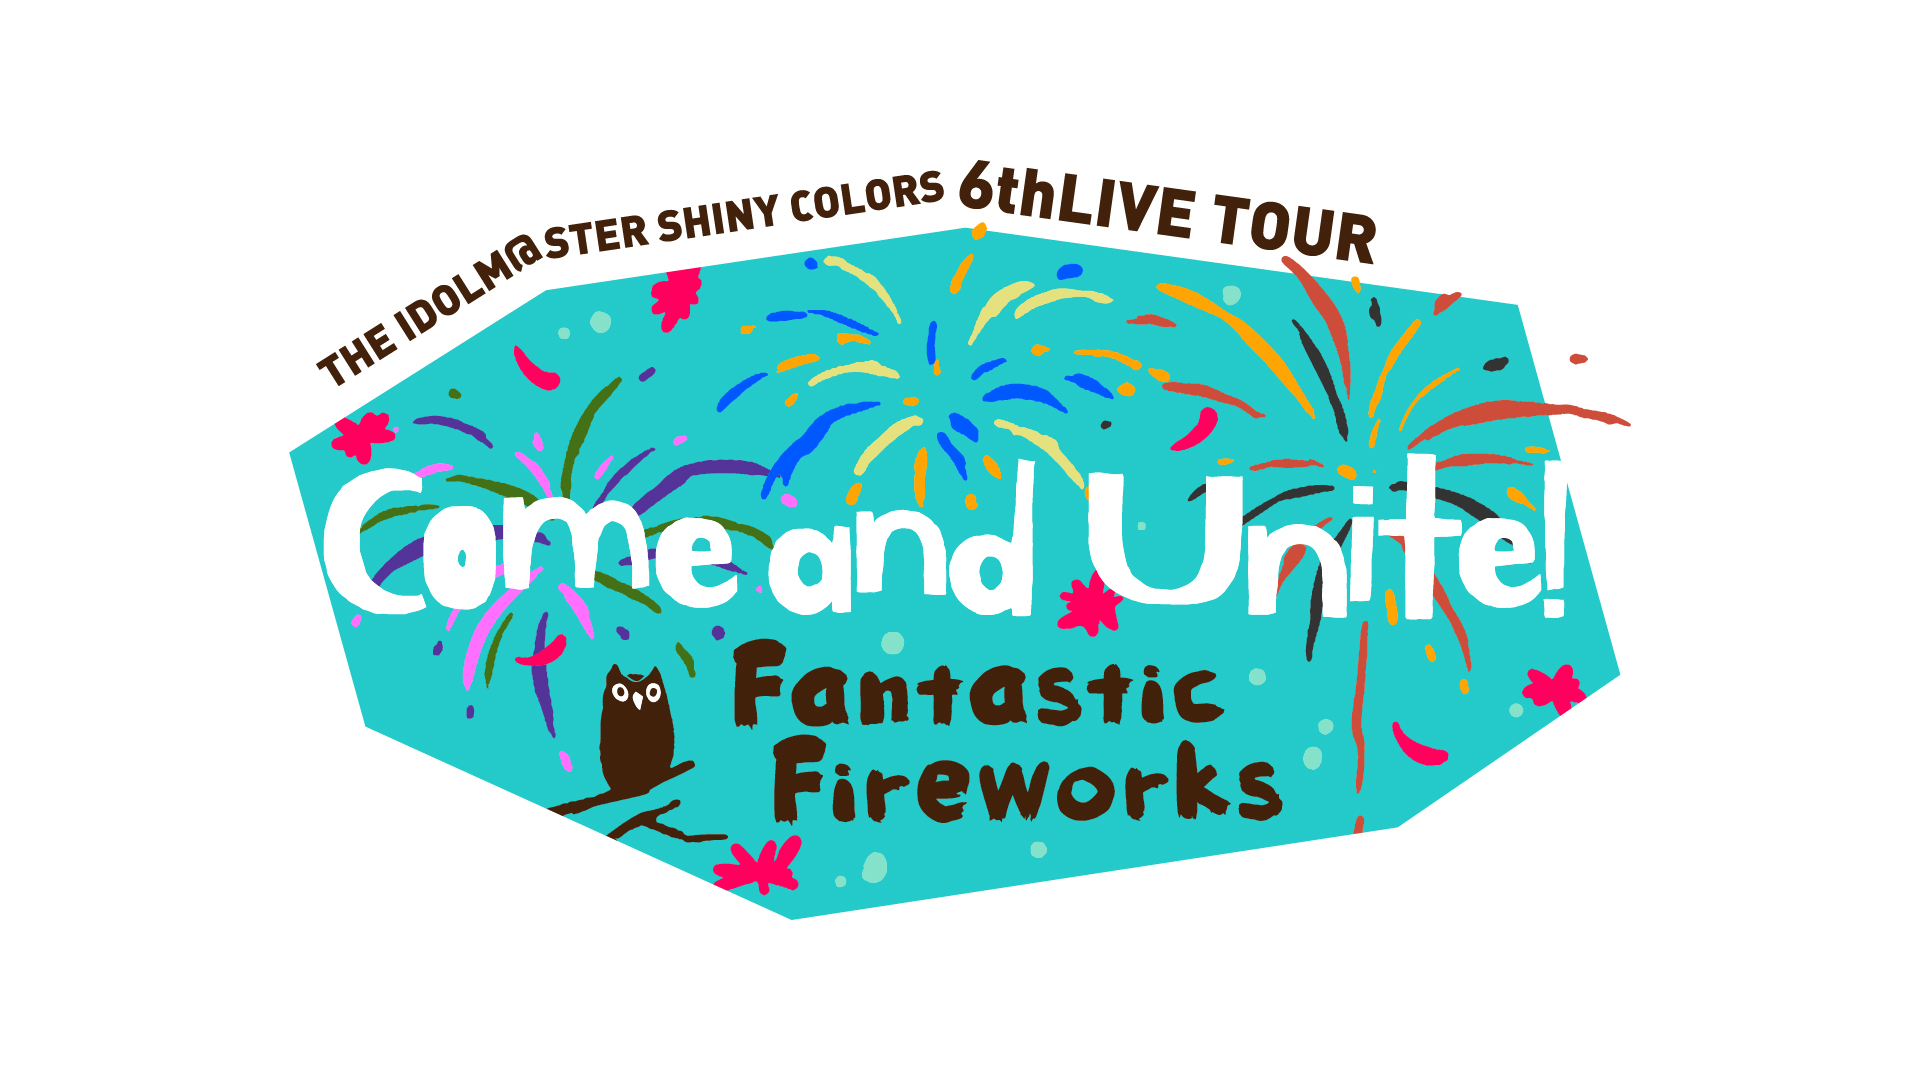 【偶像大师】闪耀色彩 6thLIVE TOUR Come and Unite!「Fantastic Fireworks」DAY1